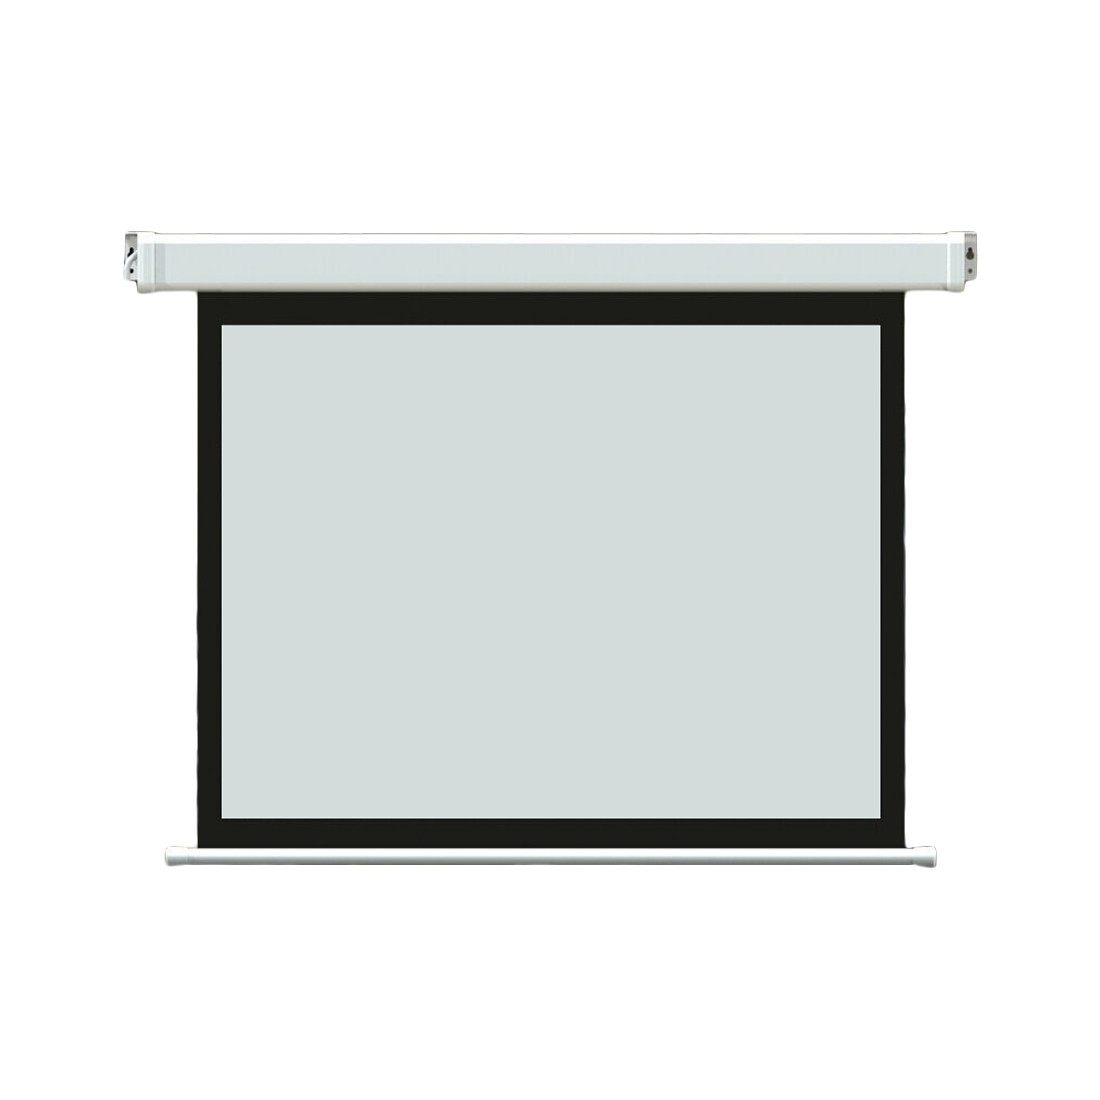 Экран моторизированный Deluxe DLS-E203х153 (80"х60"), Ø - 100", Раб. поверхность 195х145 см., 4:3